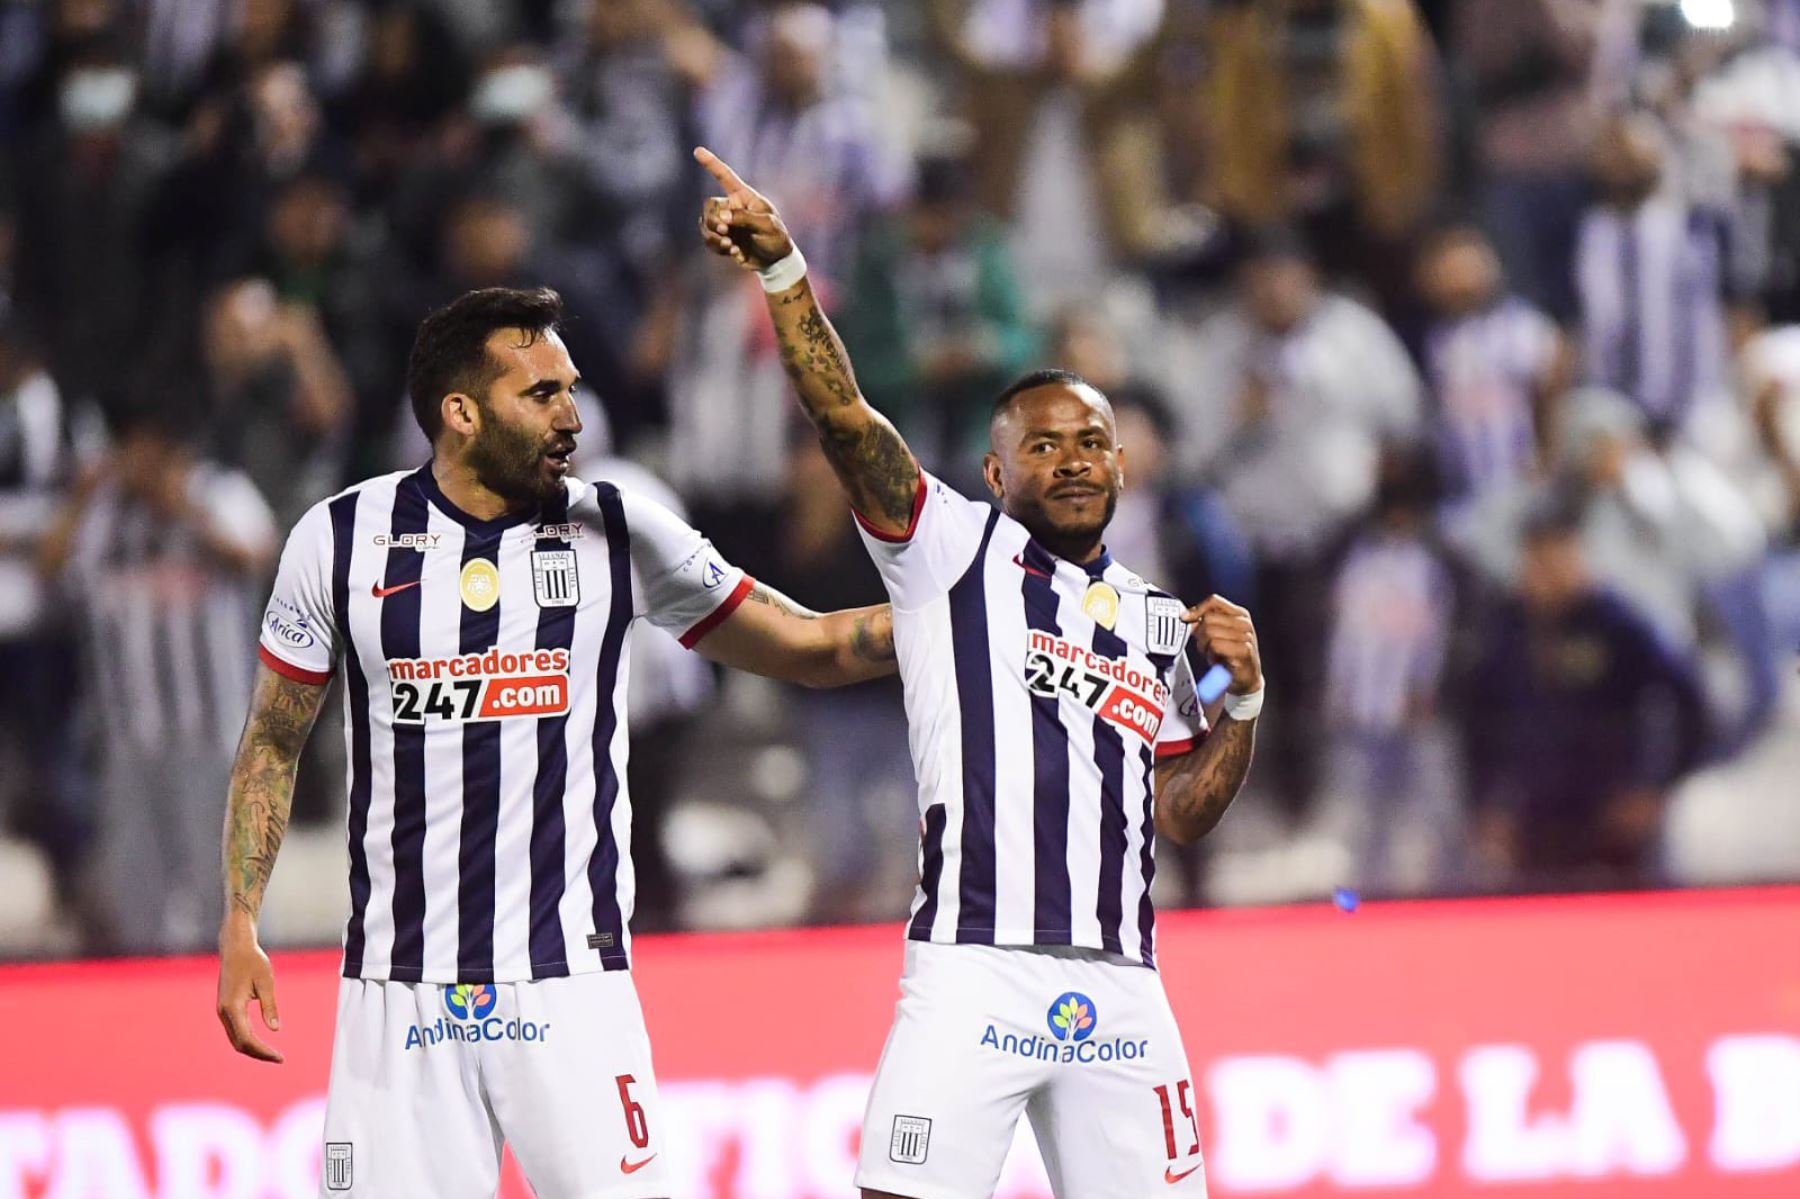 Wilmer Aguirre de Alianza Lima celebra su gol junto a sus compañeros tras anotar el primer gol ante San Martín en el estadio Alejandro Villanueva por la jornada 13 del Clausura 2022 de Liga 1 Betsson.
Foto: Liga 1